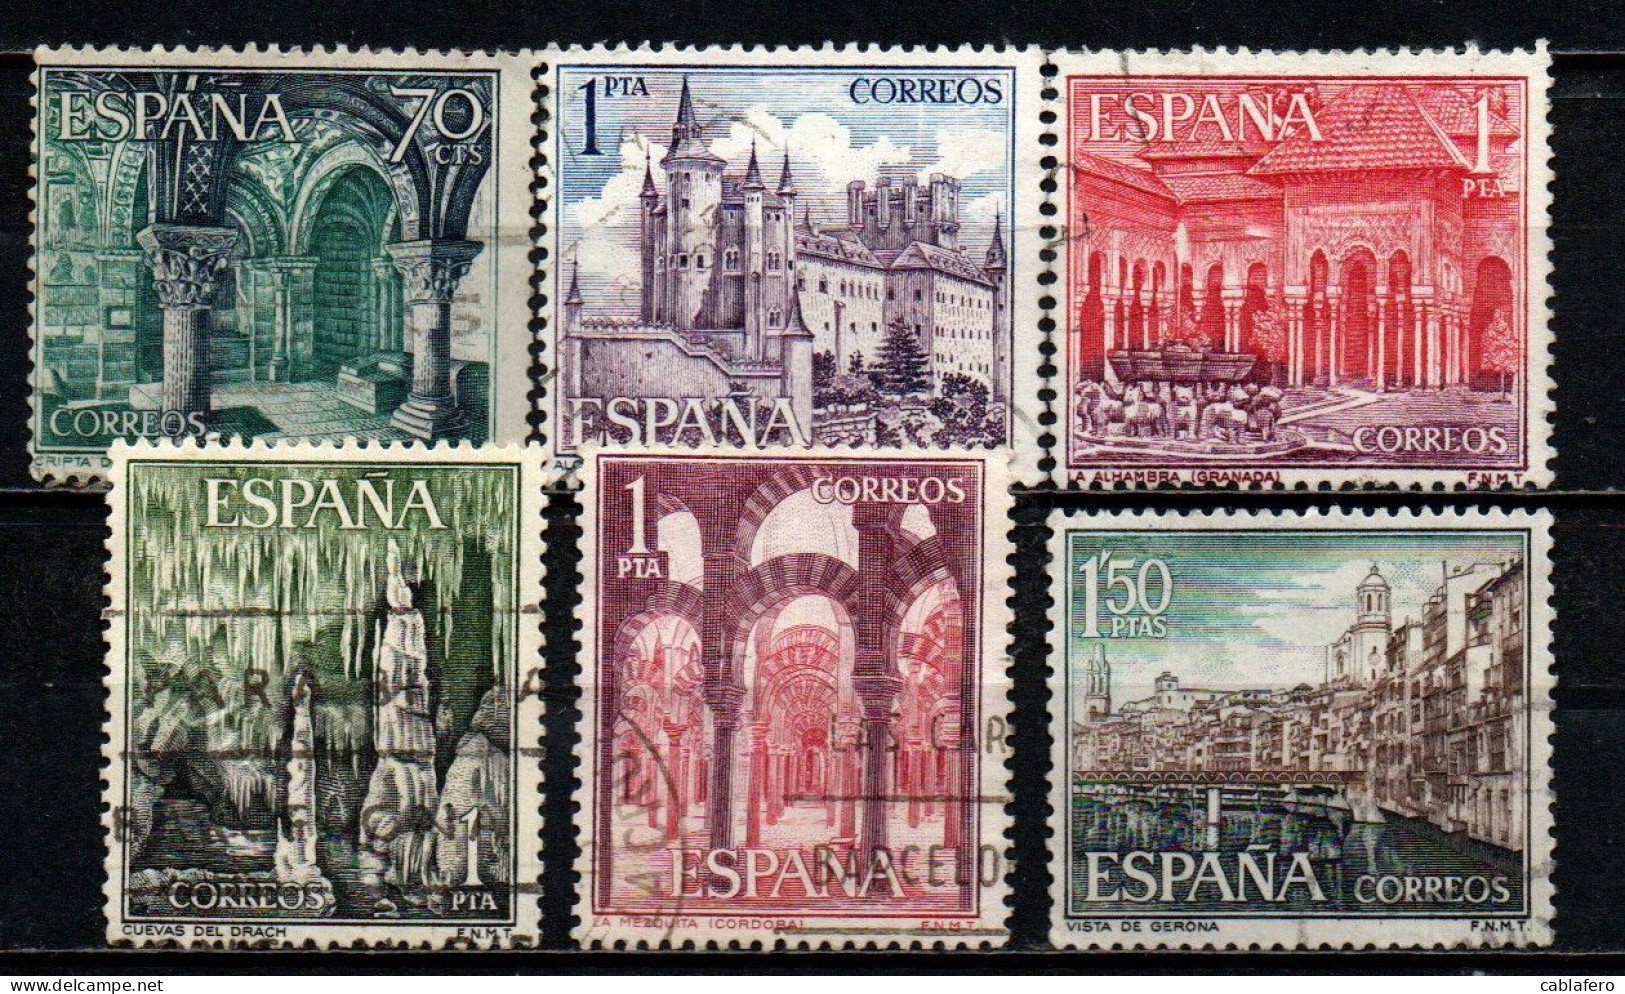 SPAGNA - 1964 - IL TURISMO IN SPAGNA: LEON - SEGOVIA - GRANADA - CORDOVA - GERONA - USATI - Gebruikt